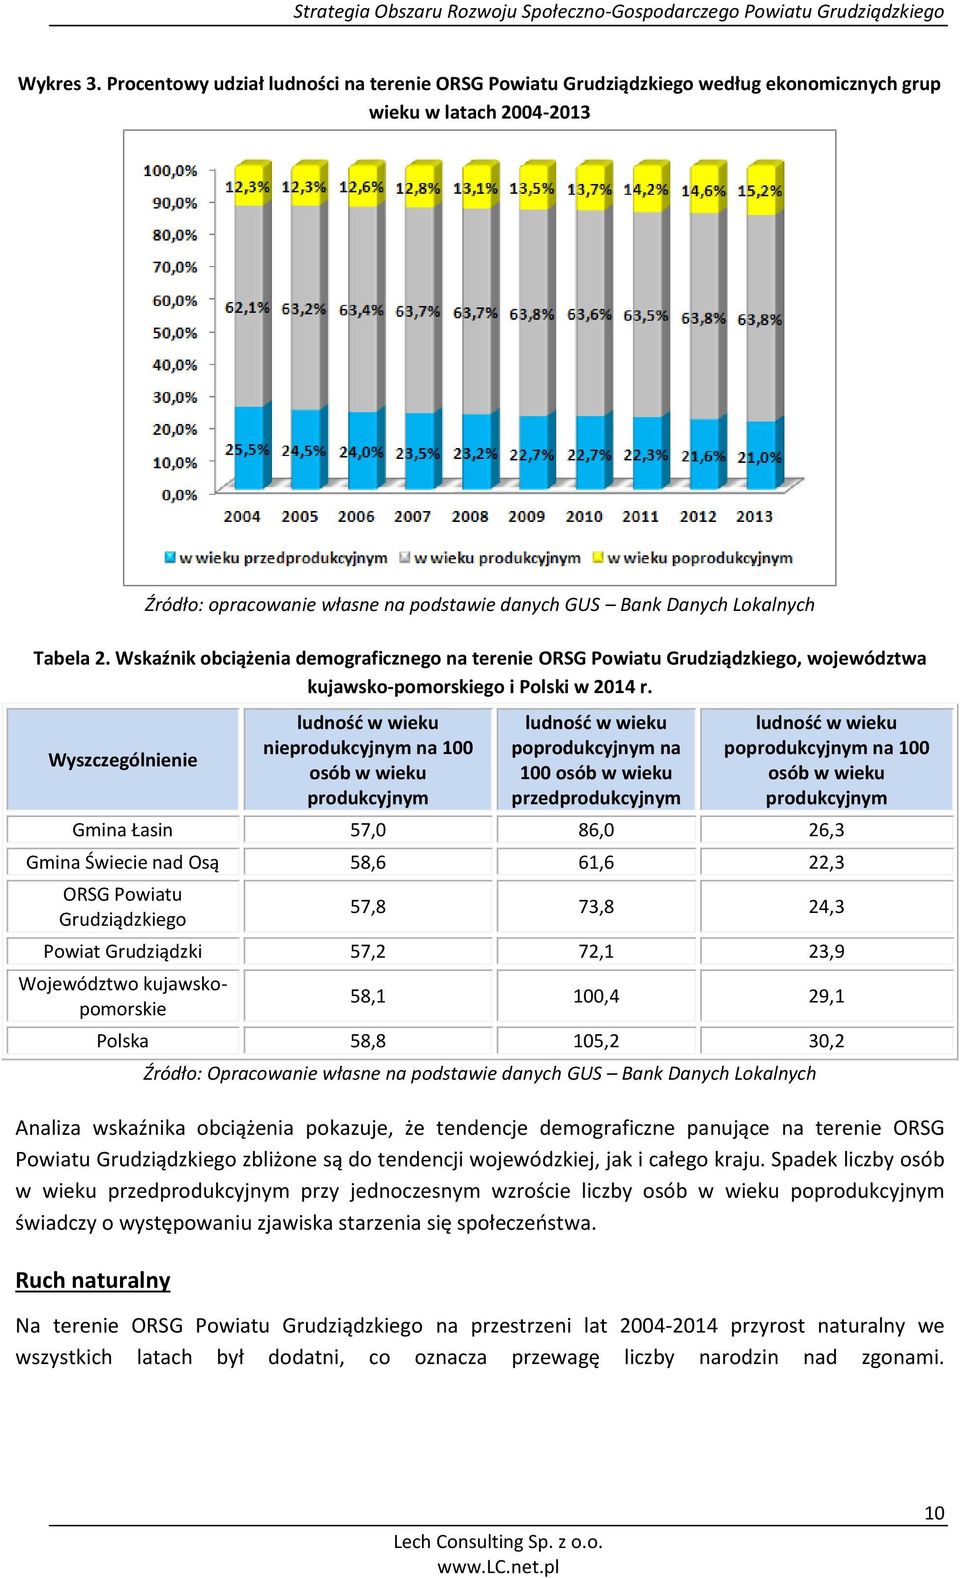 Wskaźnik obciążenia demograficznego na terenie ORSG Powiatu Grudziądzkiego, województwa kujawsko-pomorskiego i Polski w 2014 r.